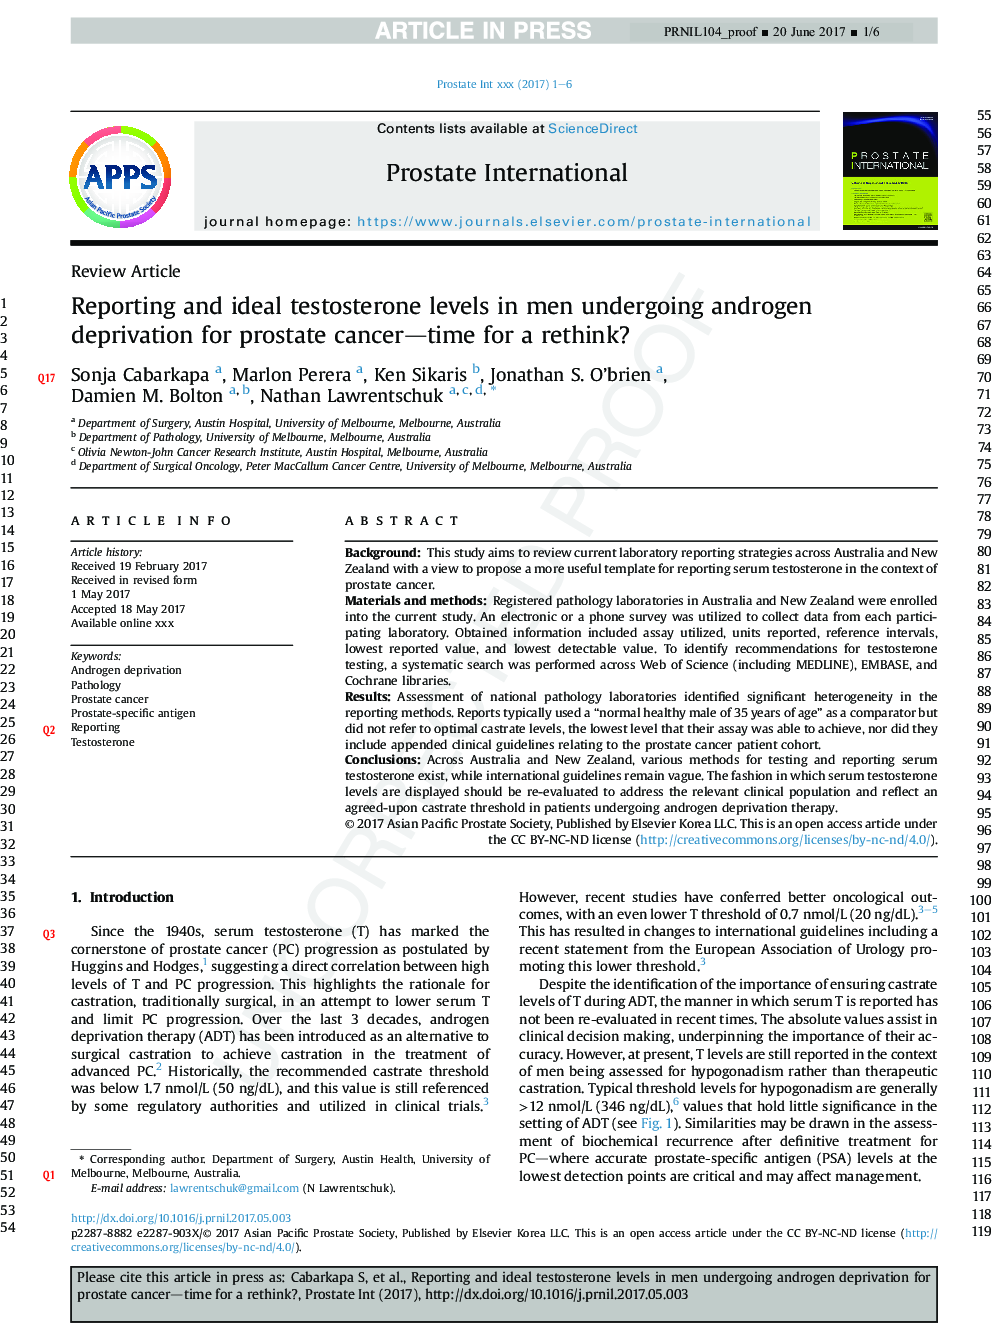 گزارش و سطح ایده آل تستوسترون در مردان تحت محرومیت اندروژن برای زمان سرطان پروستات برای تجدید نظر؟ 